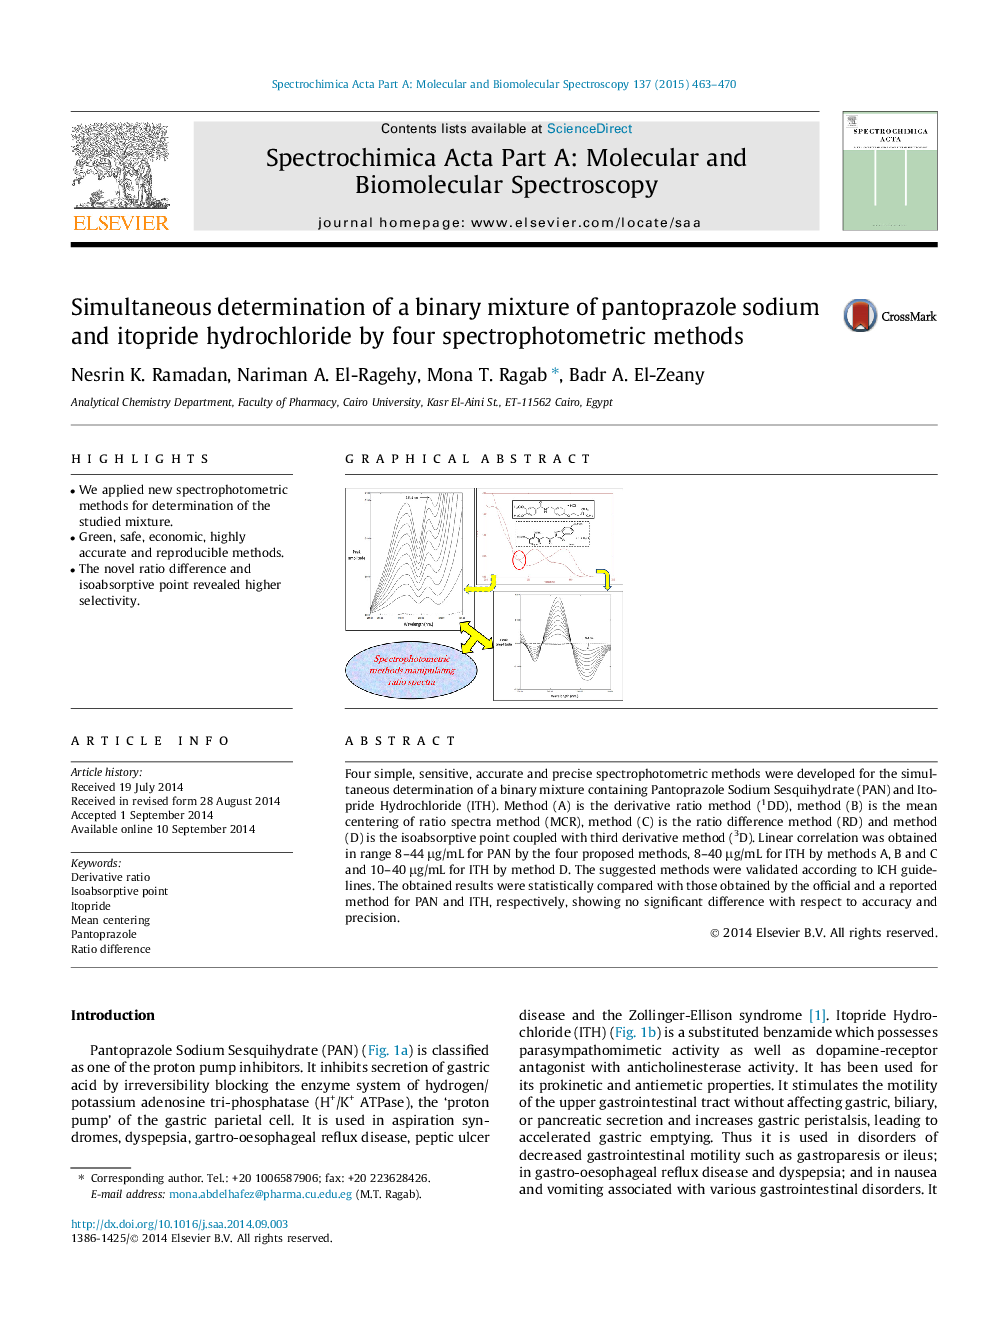 تعیین همزمان ترکیب دوتایی پانوترازول سدیم و هیدروکلراید آن با استفاده از چهار روش اسپکتروفتومتری 